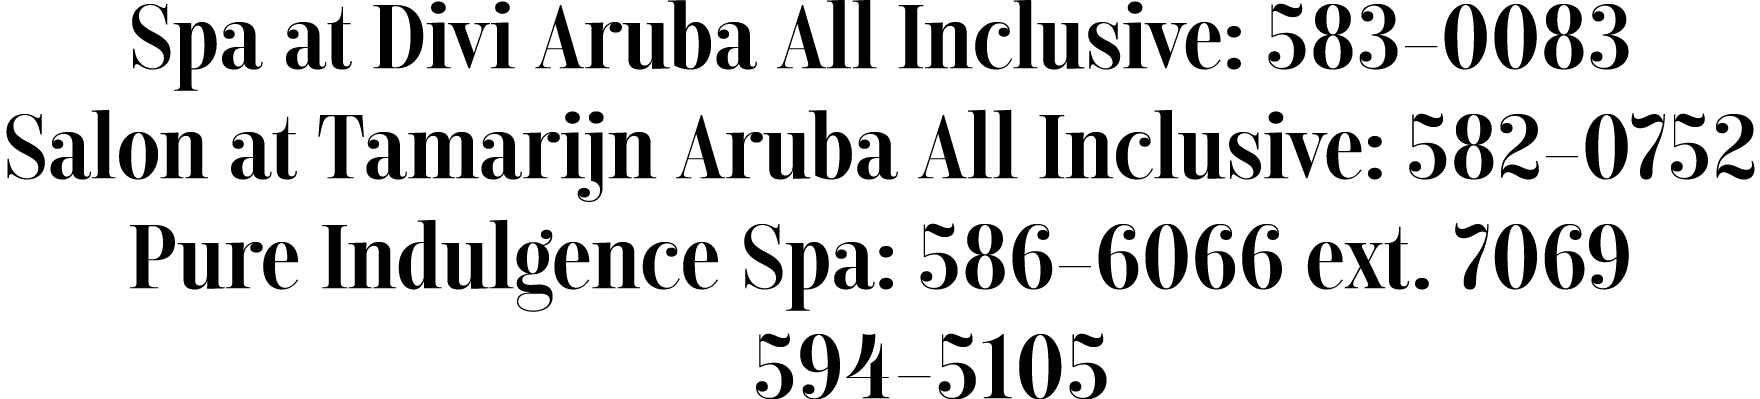 Spa at Divi Aruba All Inclusive: 583-0083 Salon at Tamarijn Aruba All Inclusive: 582-0752 Pure Indulgence Spa: 586-60   